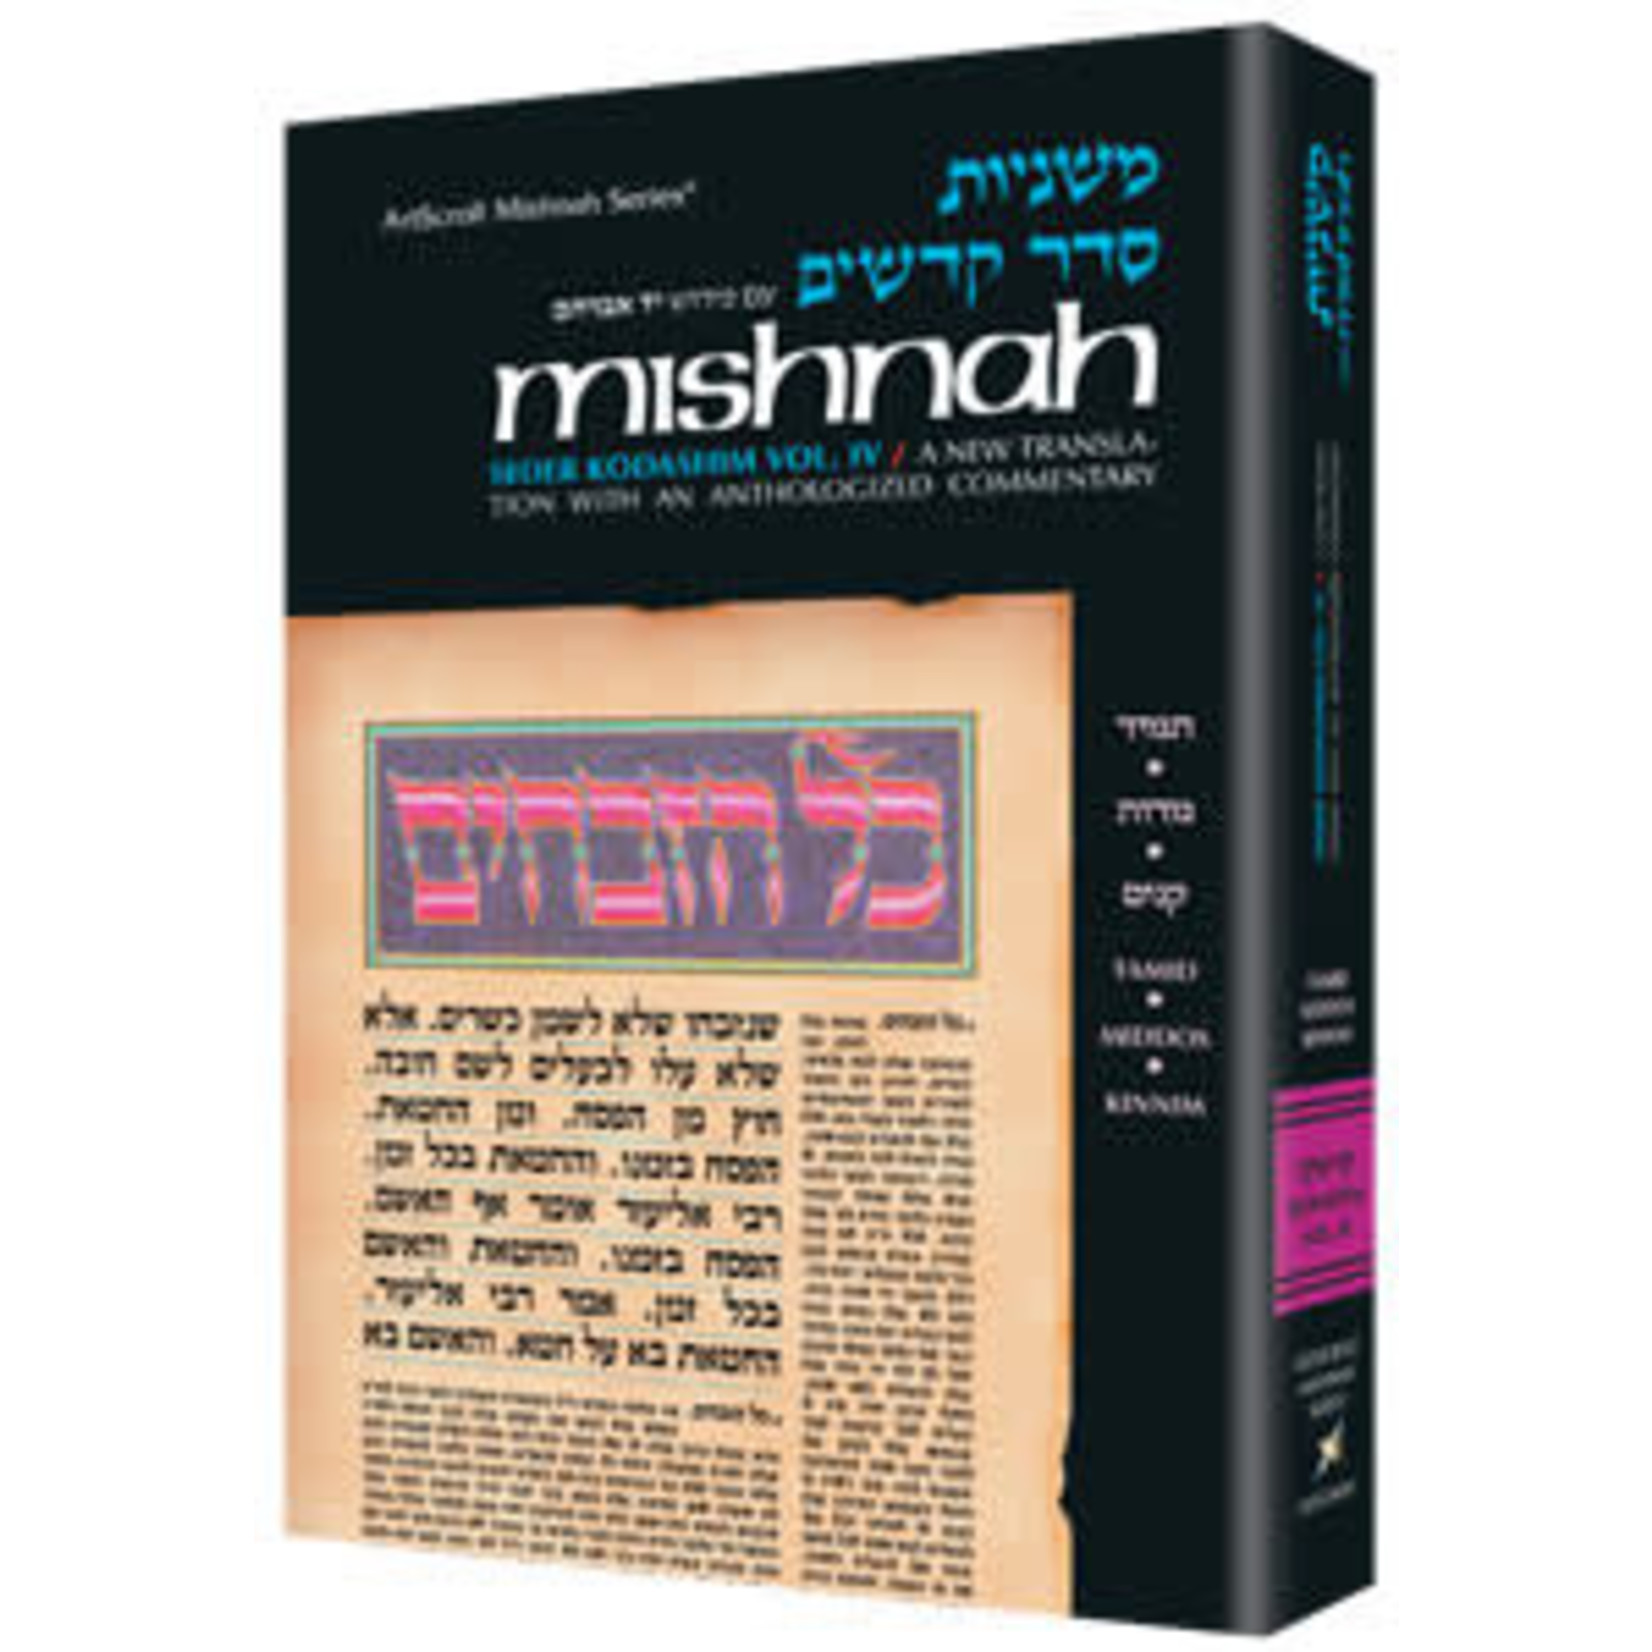 KERISOS - Seder Kodashim K3(c) - ArtScroll Yad Avraham Series Hebrew/English Mishnah, Full Size